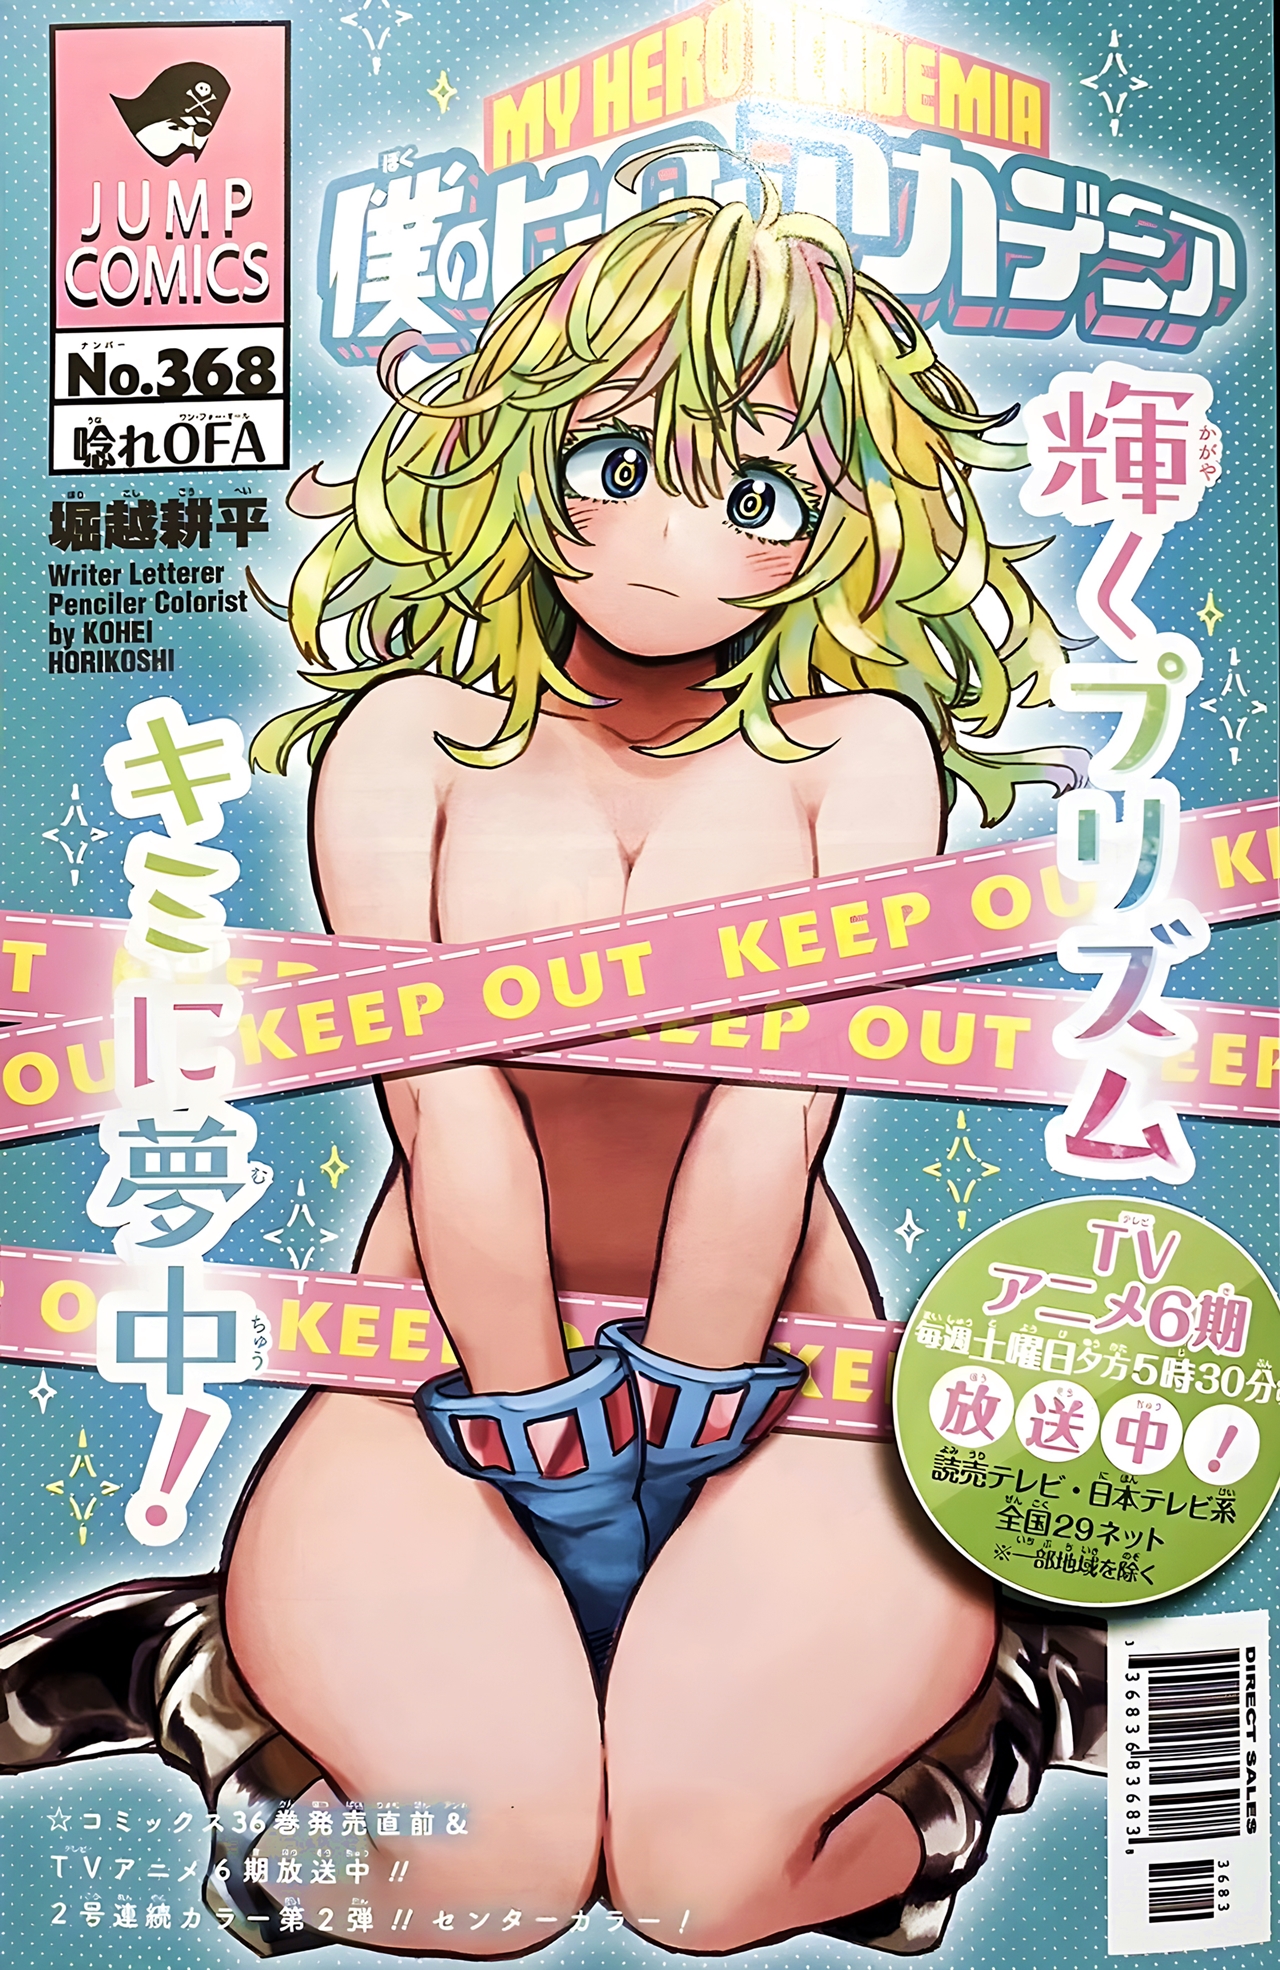 Próxima portada de la Revista Weekly Shonen Jump, donde aparece el personaje de Invisible Girl semi desnuda